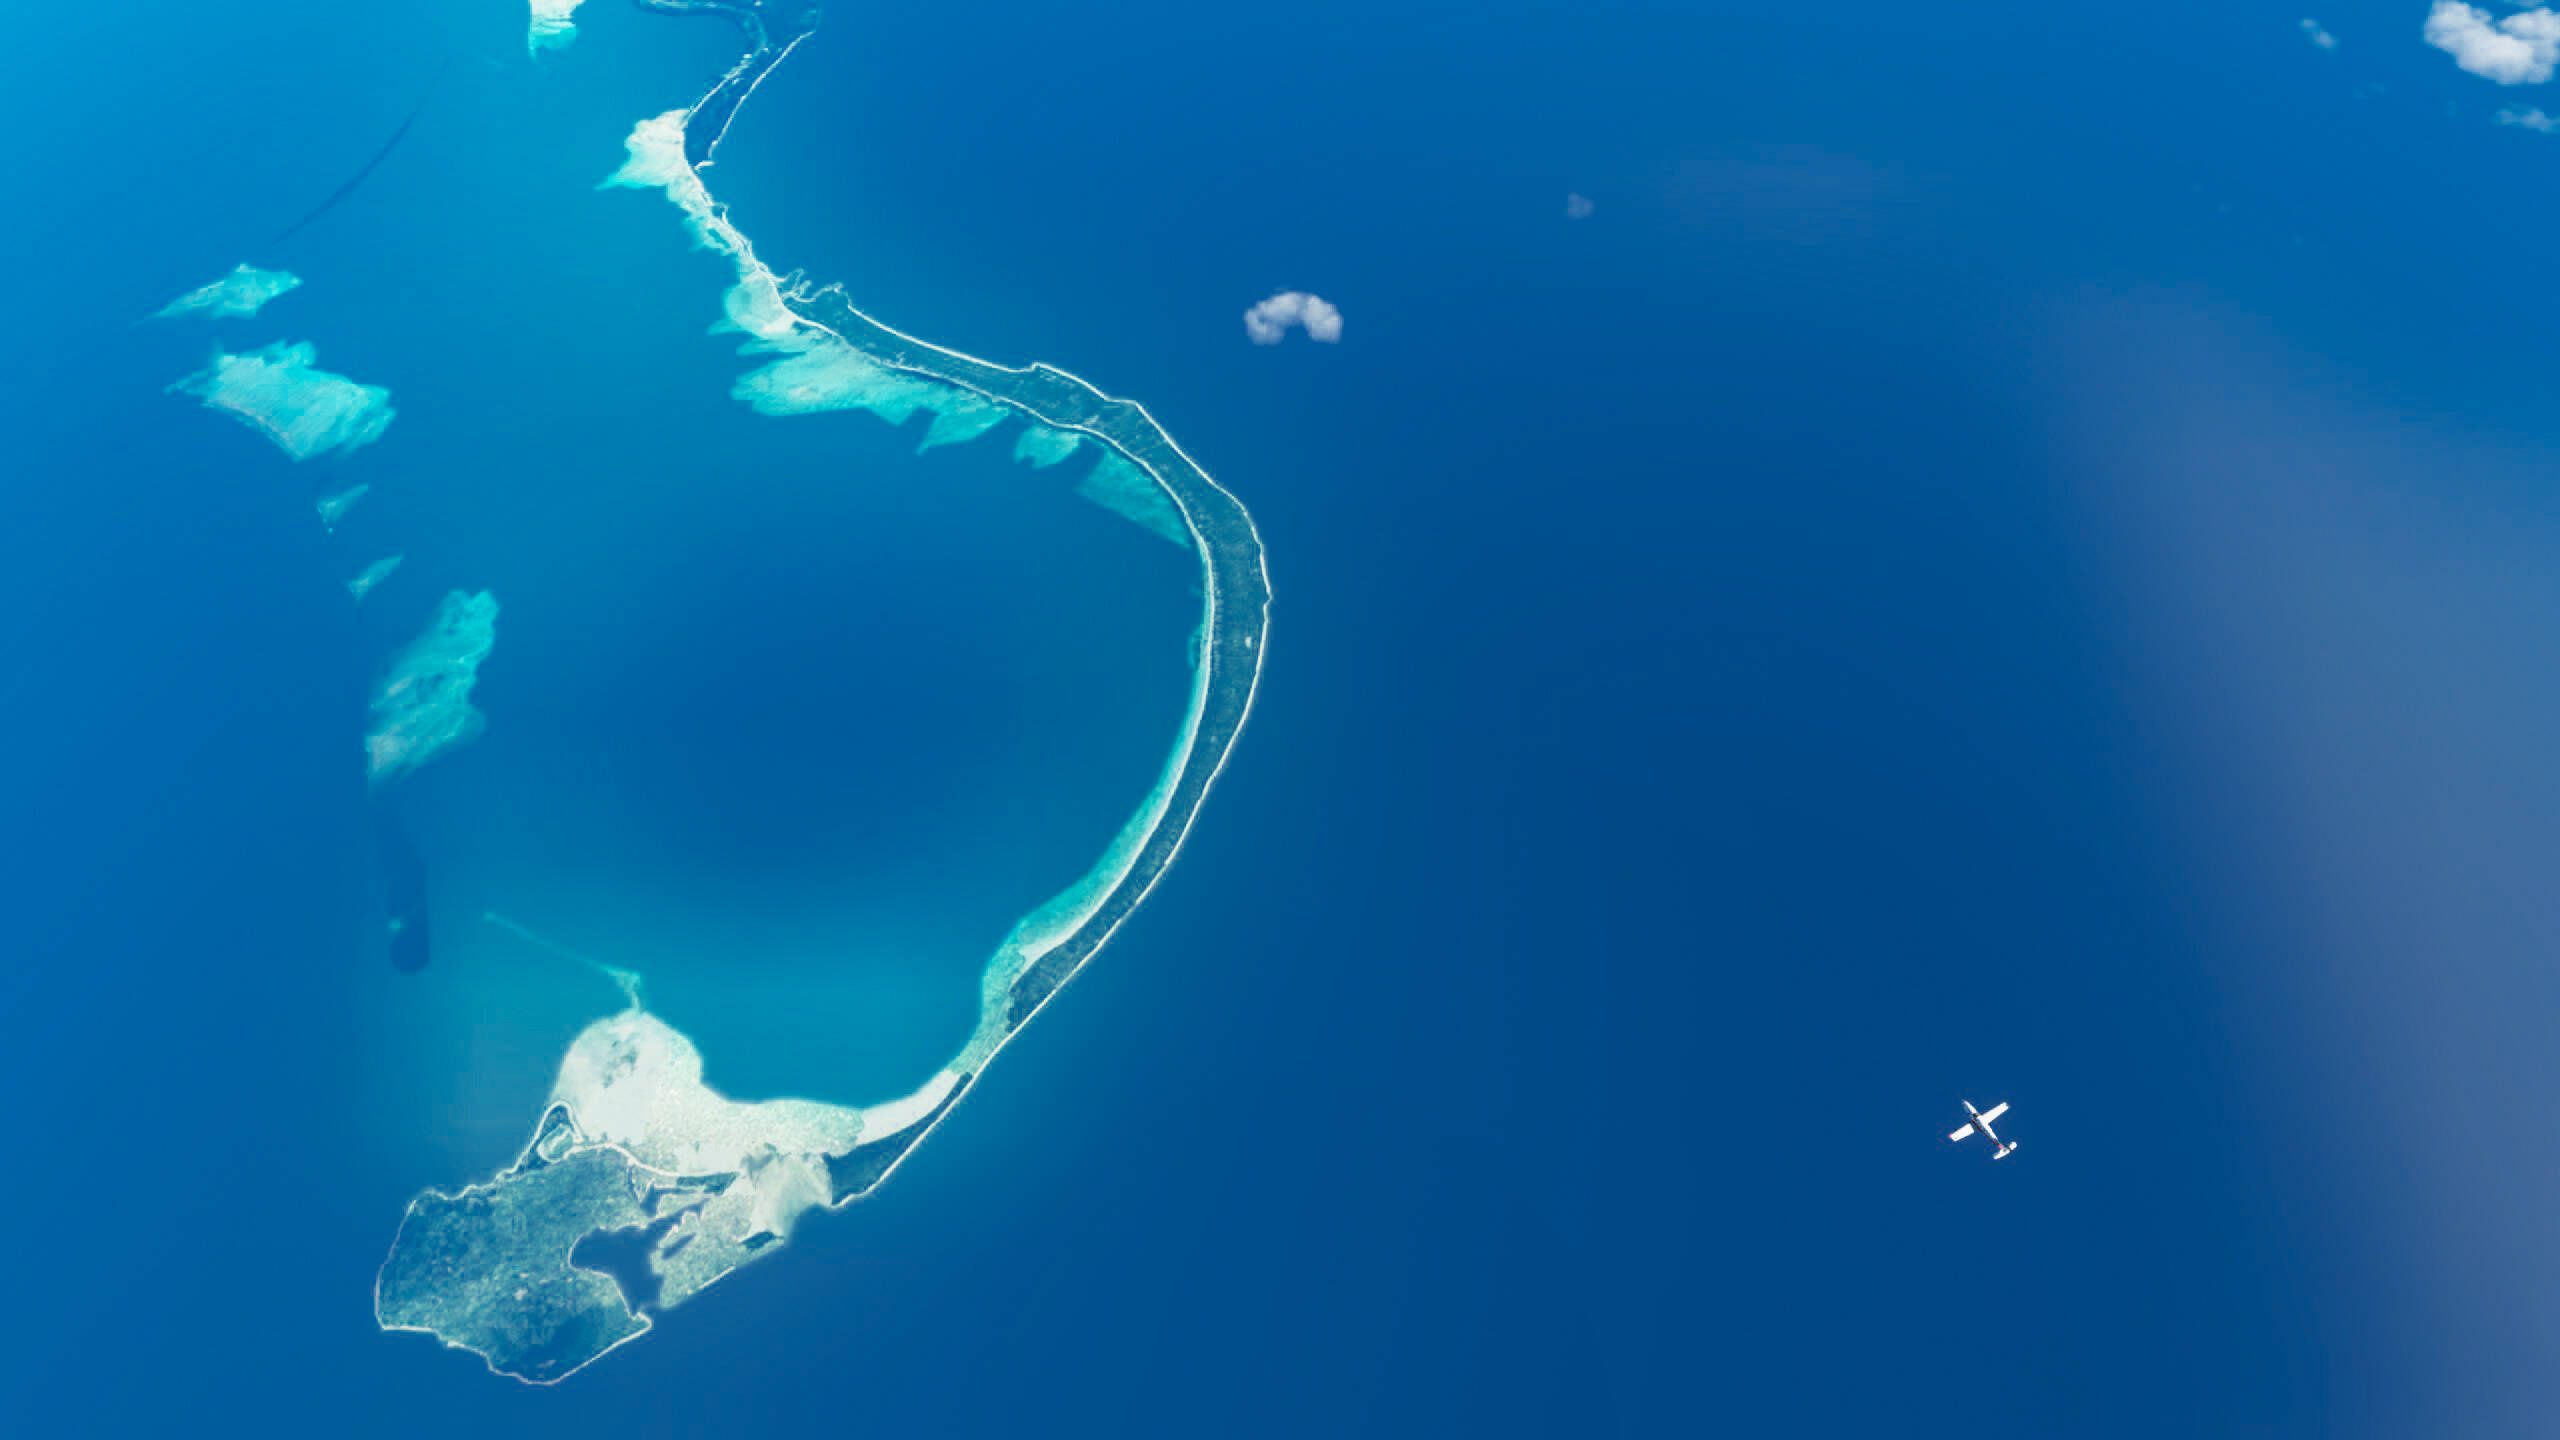 Funafuti Atoll, Remote paradise, Stunning Samoan journey, Pacific beauty, 2560x1440 HD Desktop